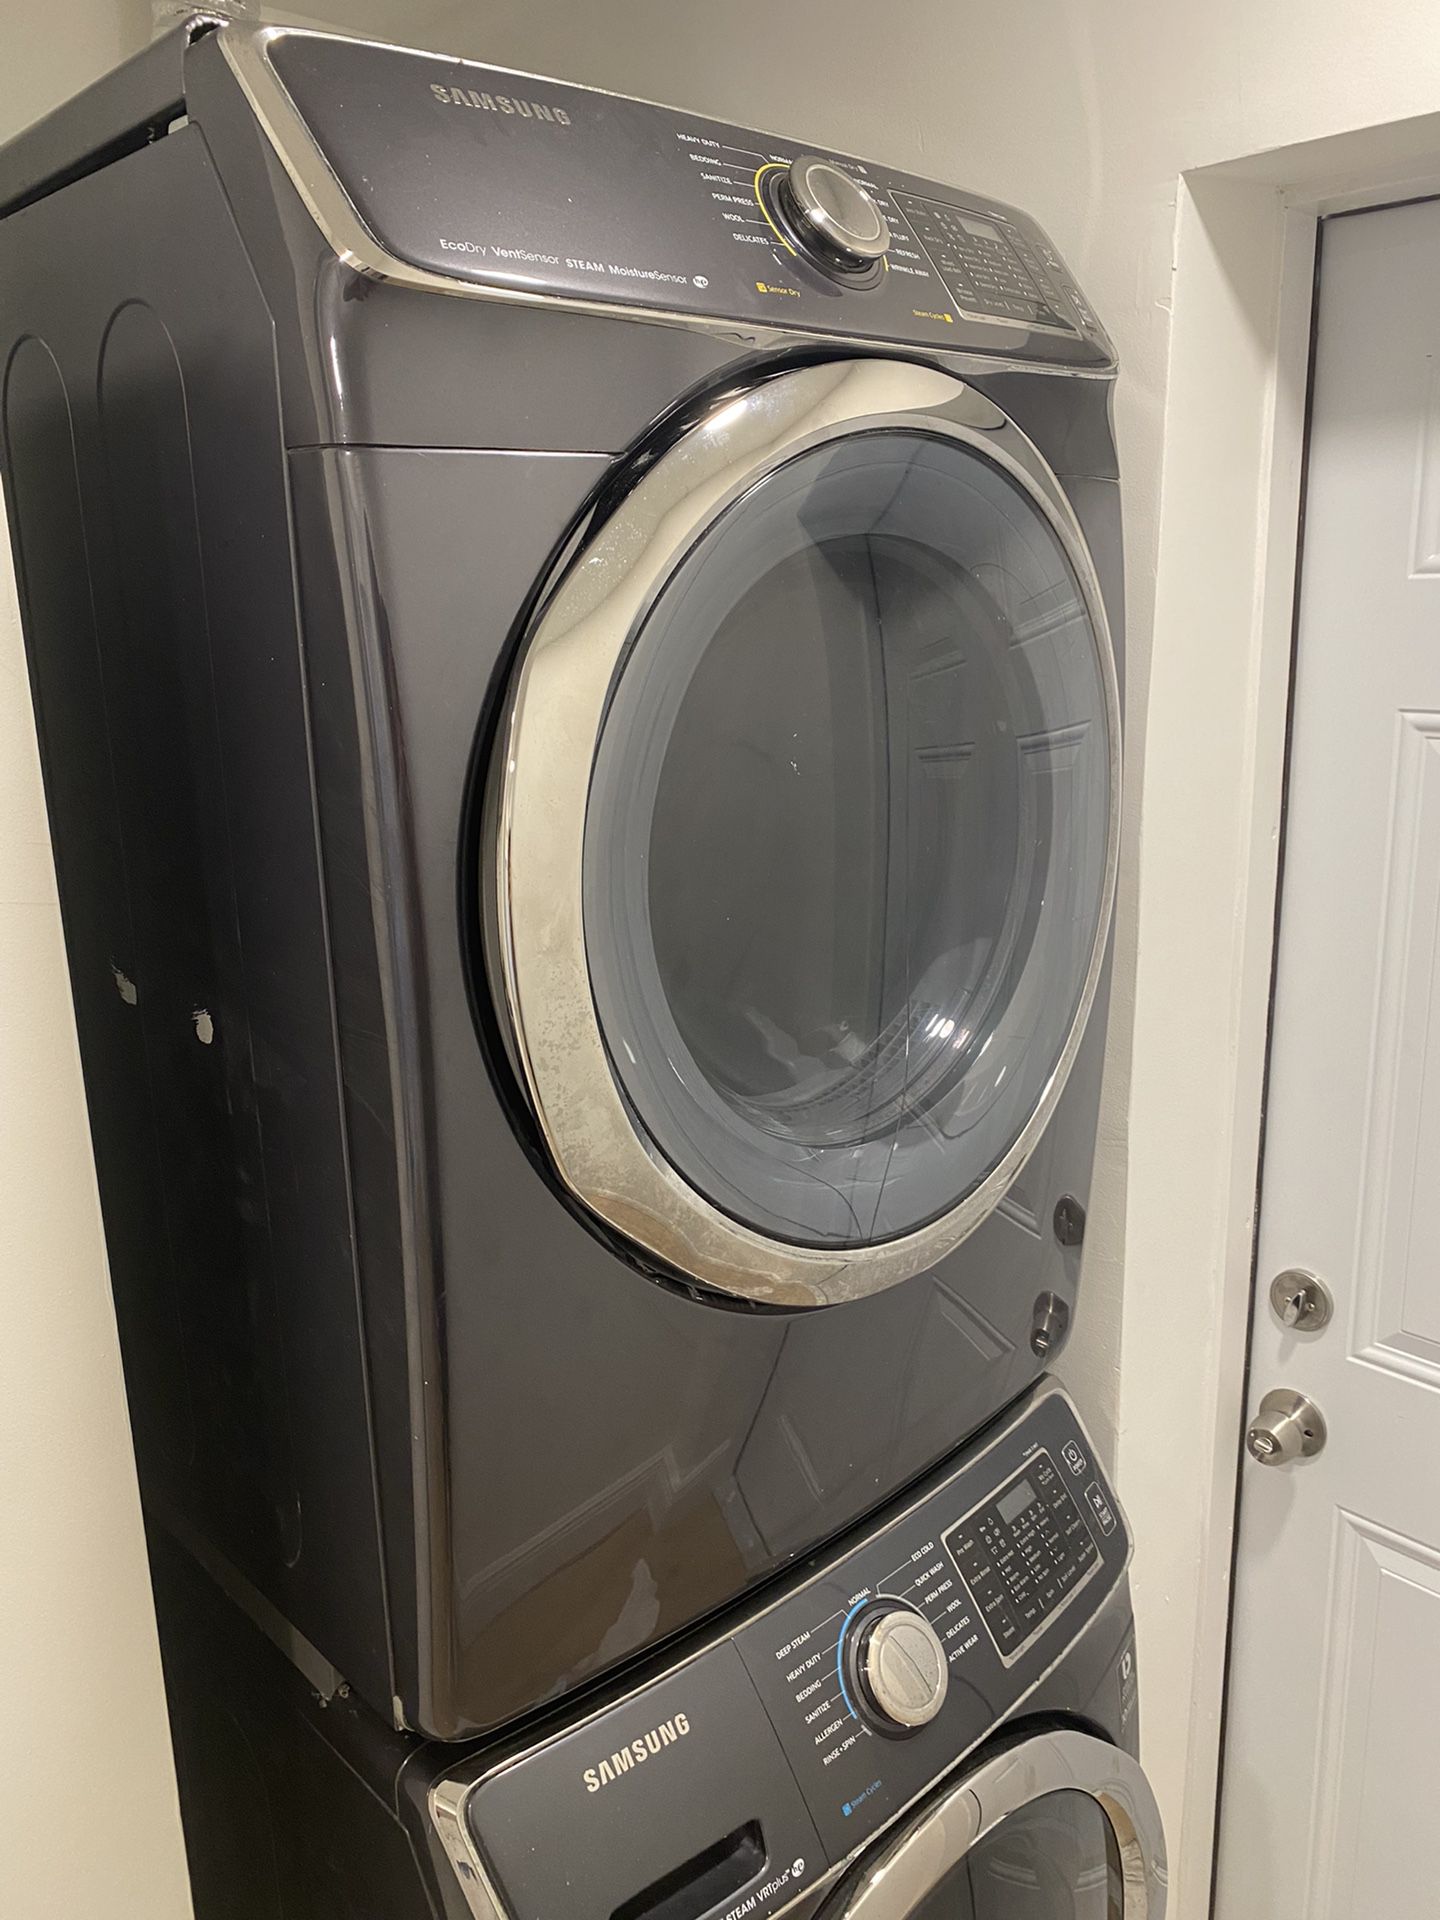 Samsung Washer / Dryer